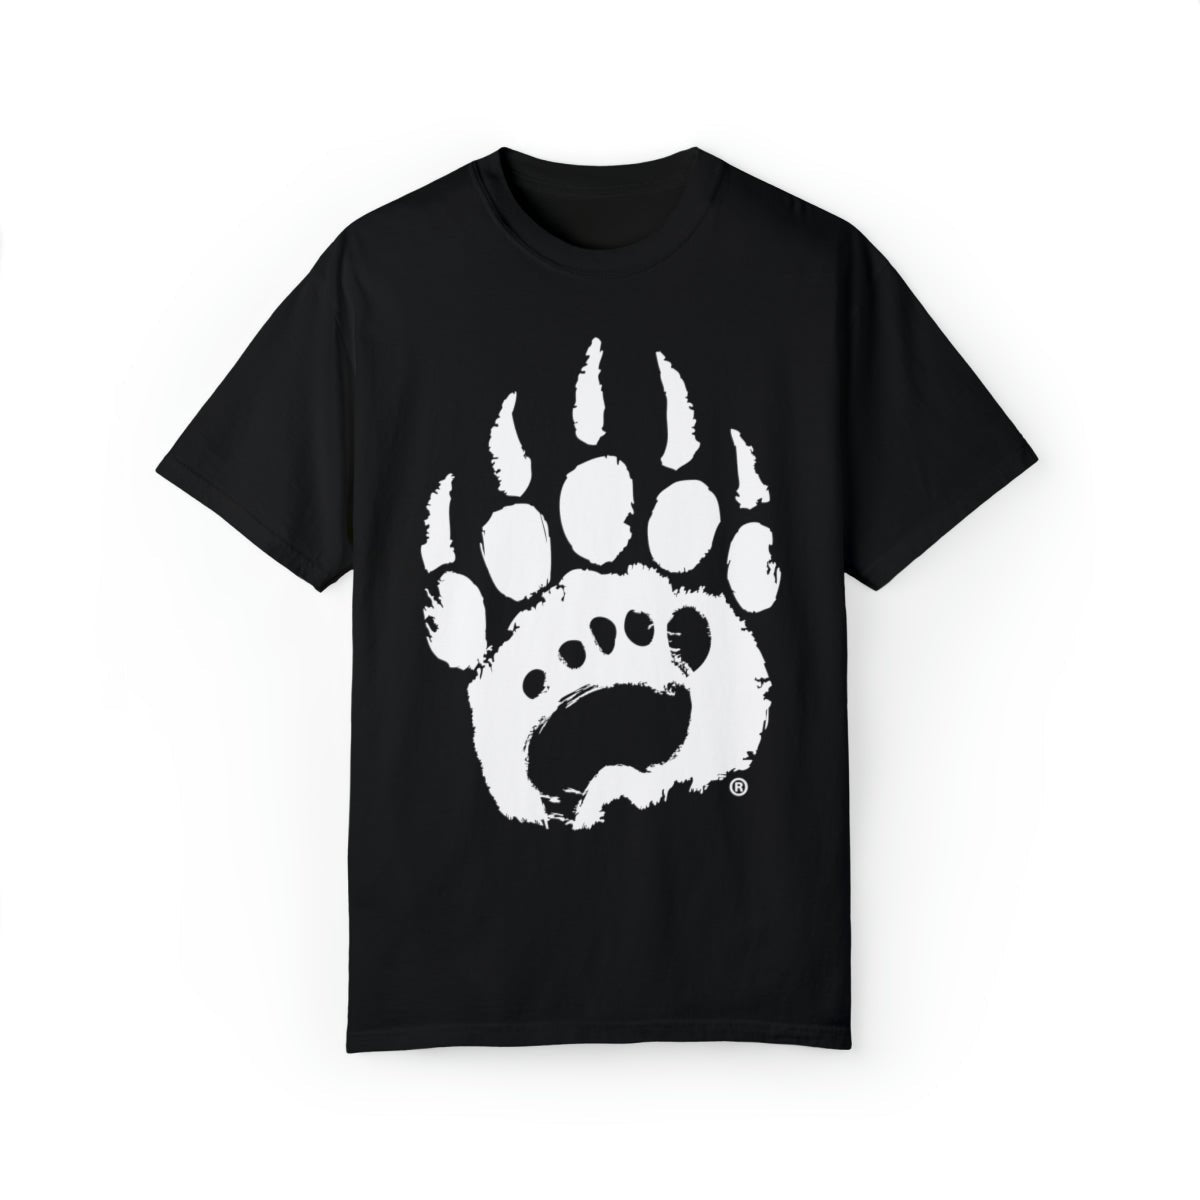 Bearfoot - Bearfoot T - Shirt - Merchandise